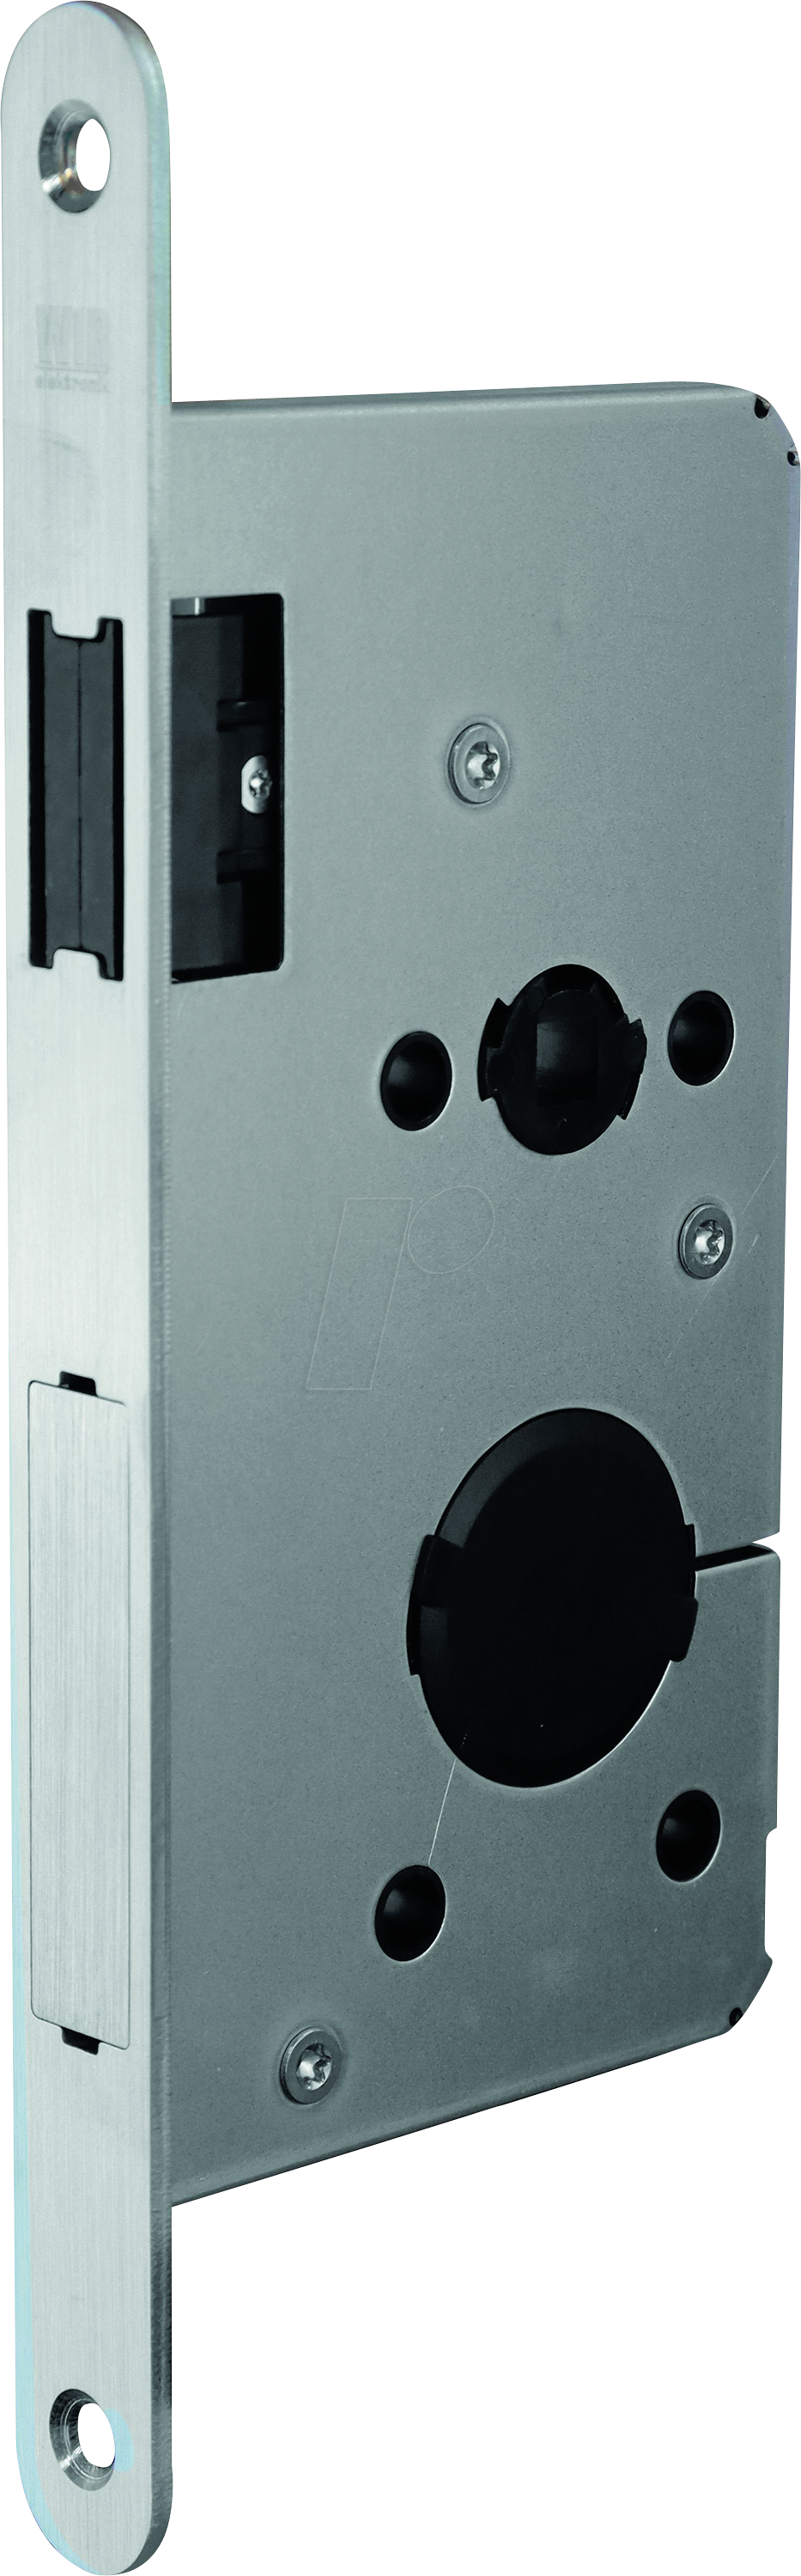 WIR 1002-000019 - Elektronisches Türschloss, Magnetfalle von WIR ELEKTRONIK